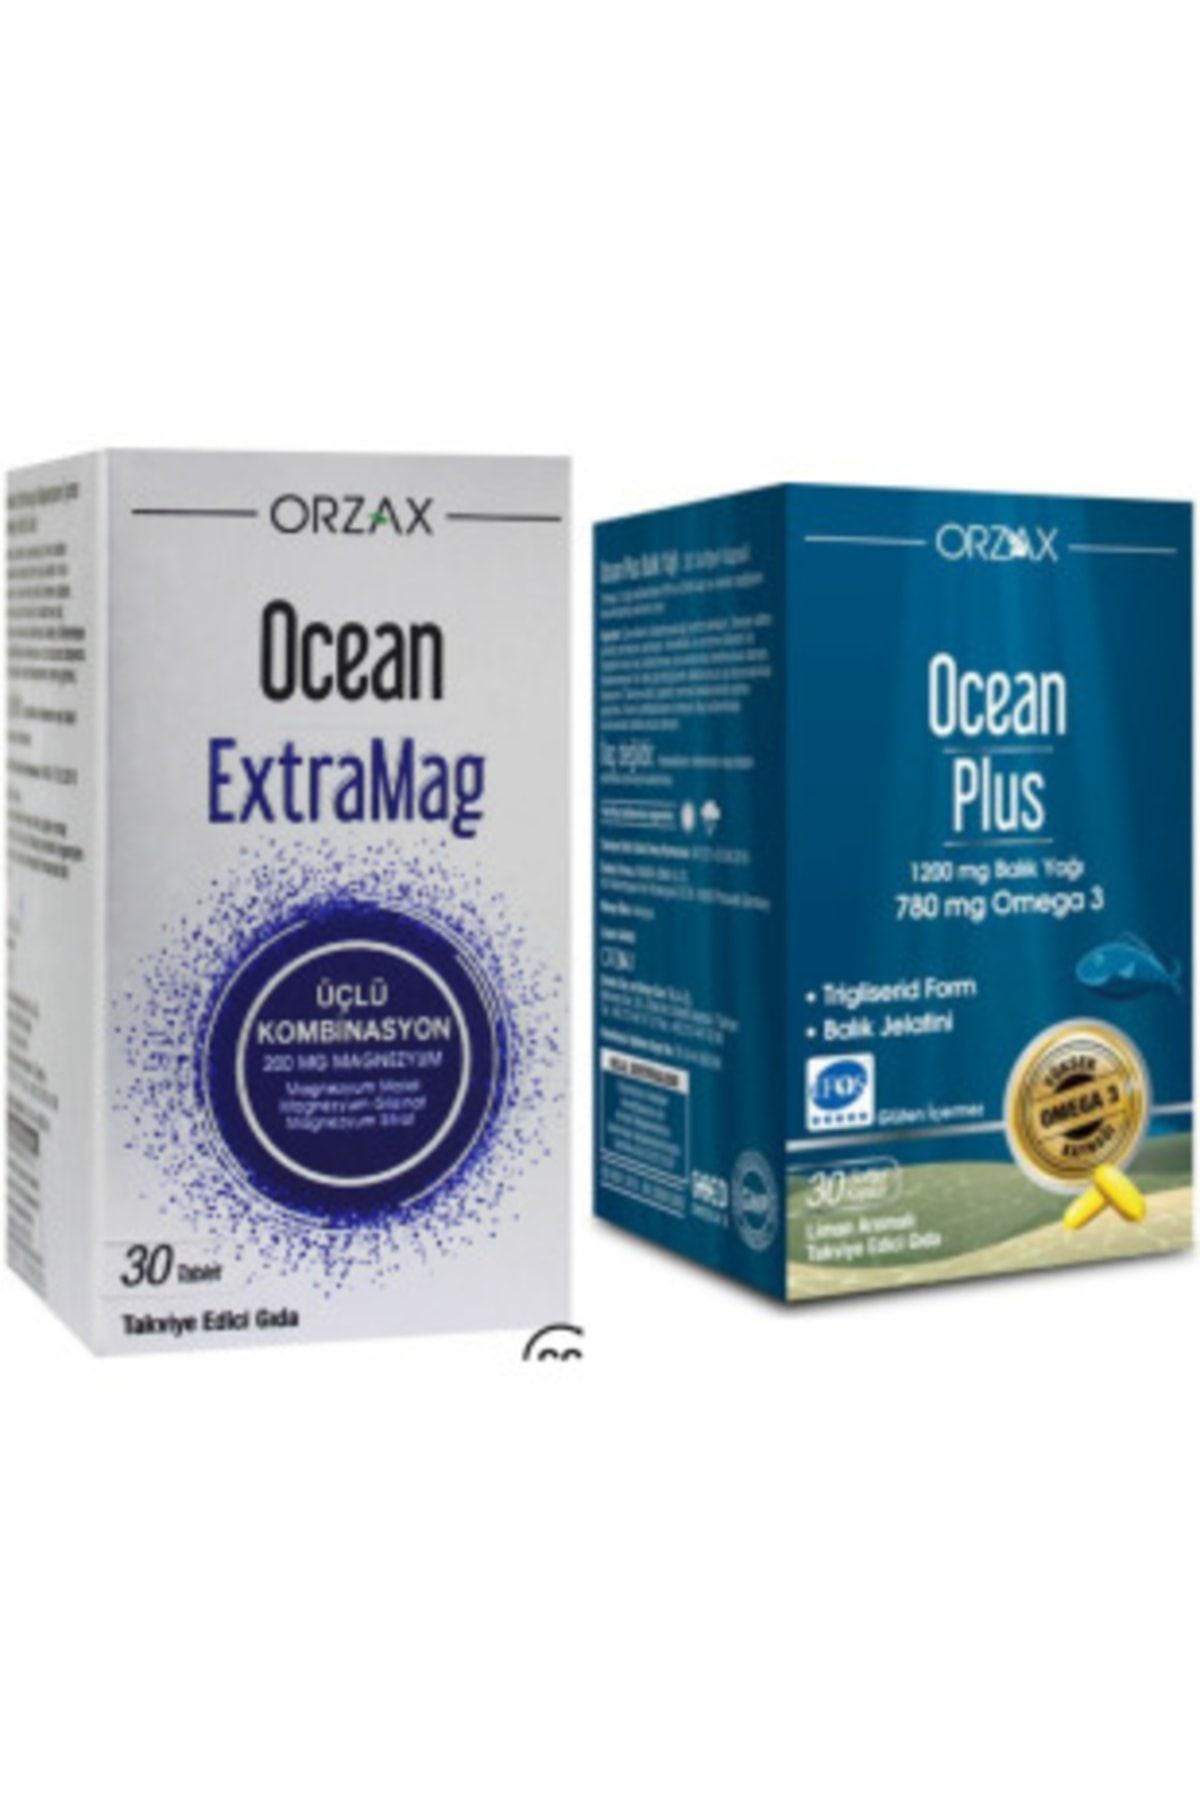 Ocean Extramag Üçlü Kombinasyon 30 Tablet + Plus Omega 3 1200 Mg 30 Kapsül